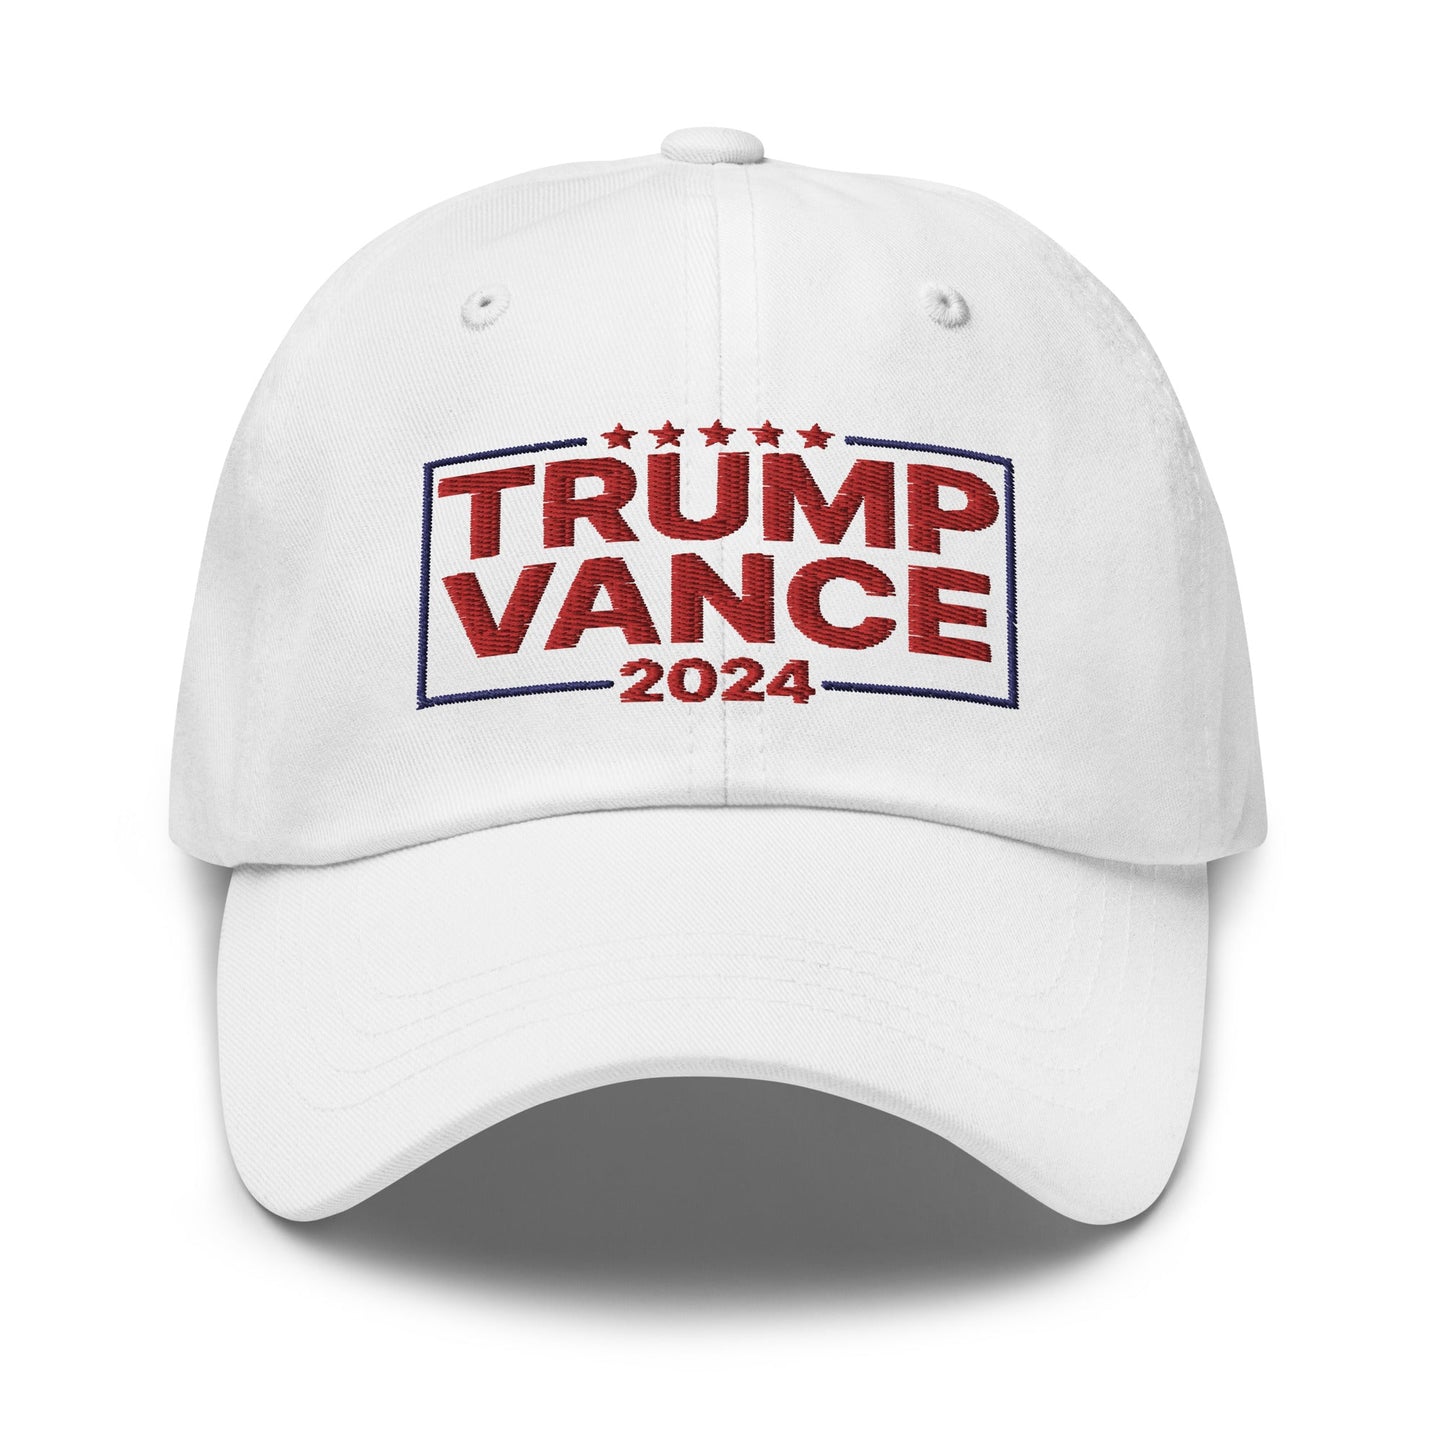 Trump Vance 2024 Dad Hat White